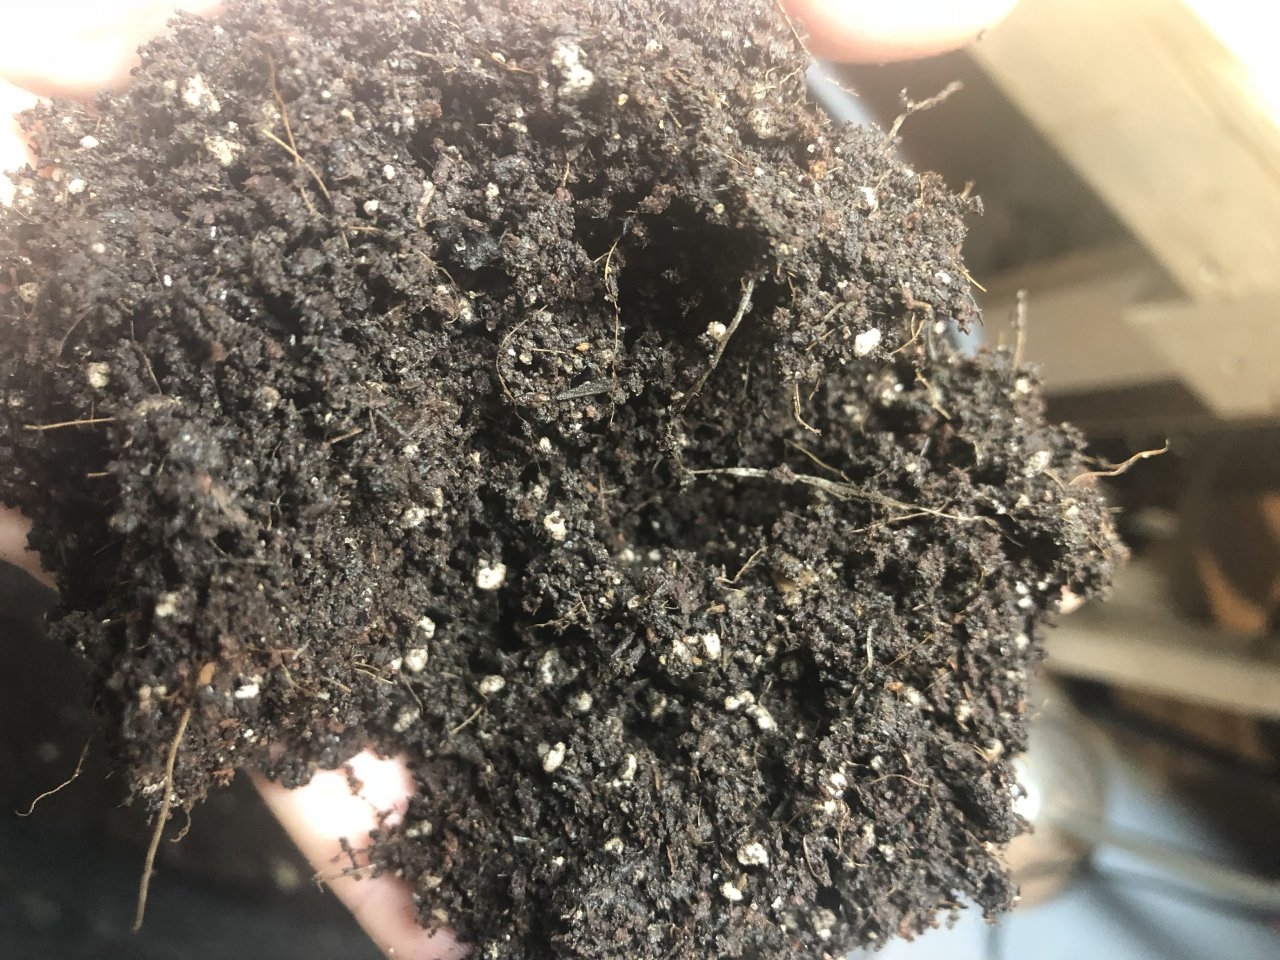 Soil looking soil like